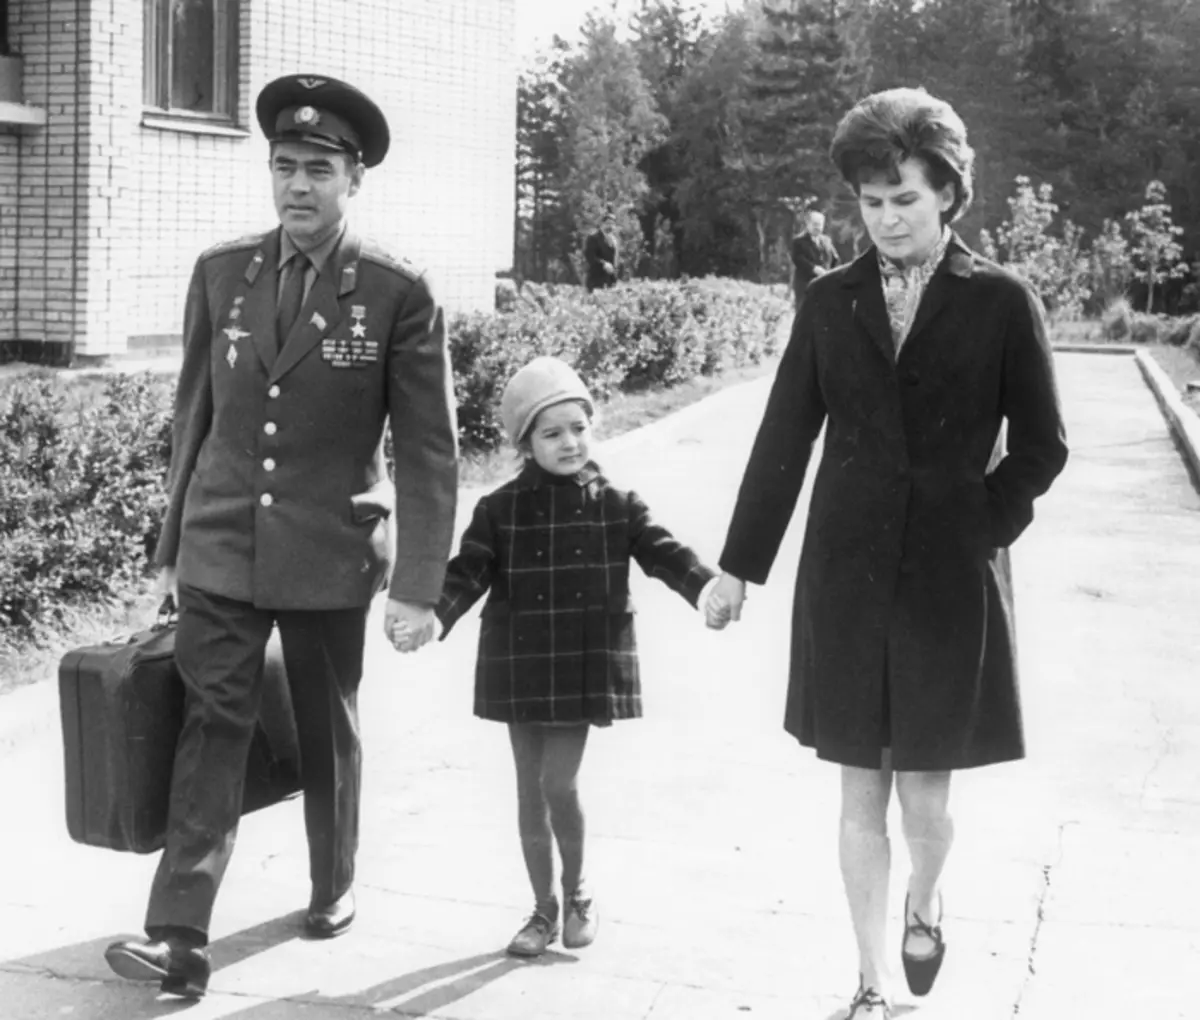 Secondo le voci, il matrimonio di Andriyan Nikolaev e Tereshkova è stato progettato da Nikita Khrushchev stesso. Presto l'unica figlia dei cosmonauts Elena è apparsa